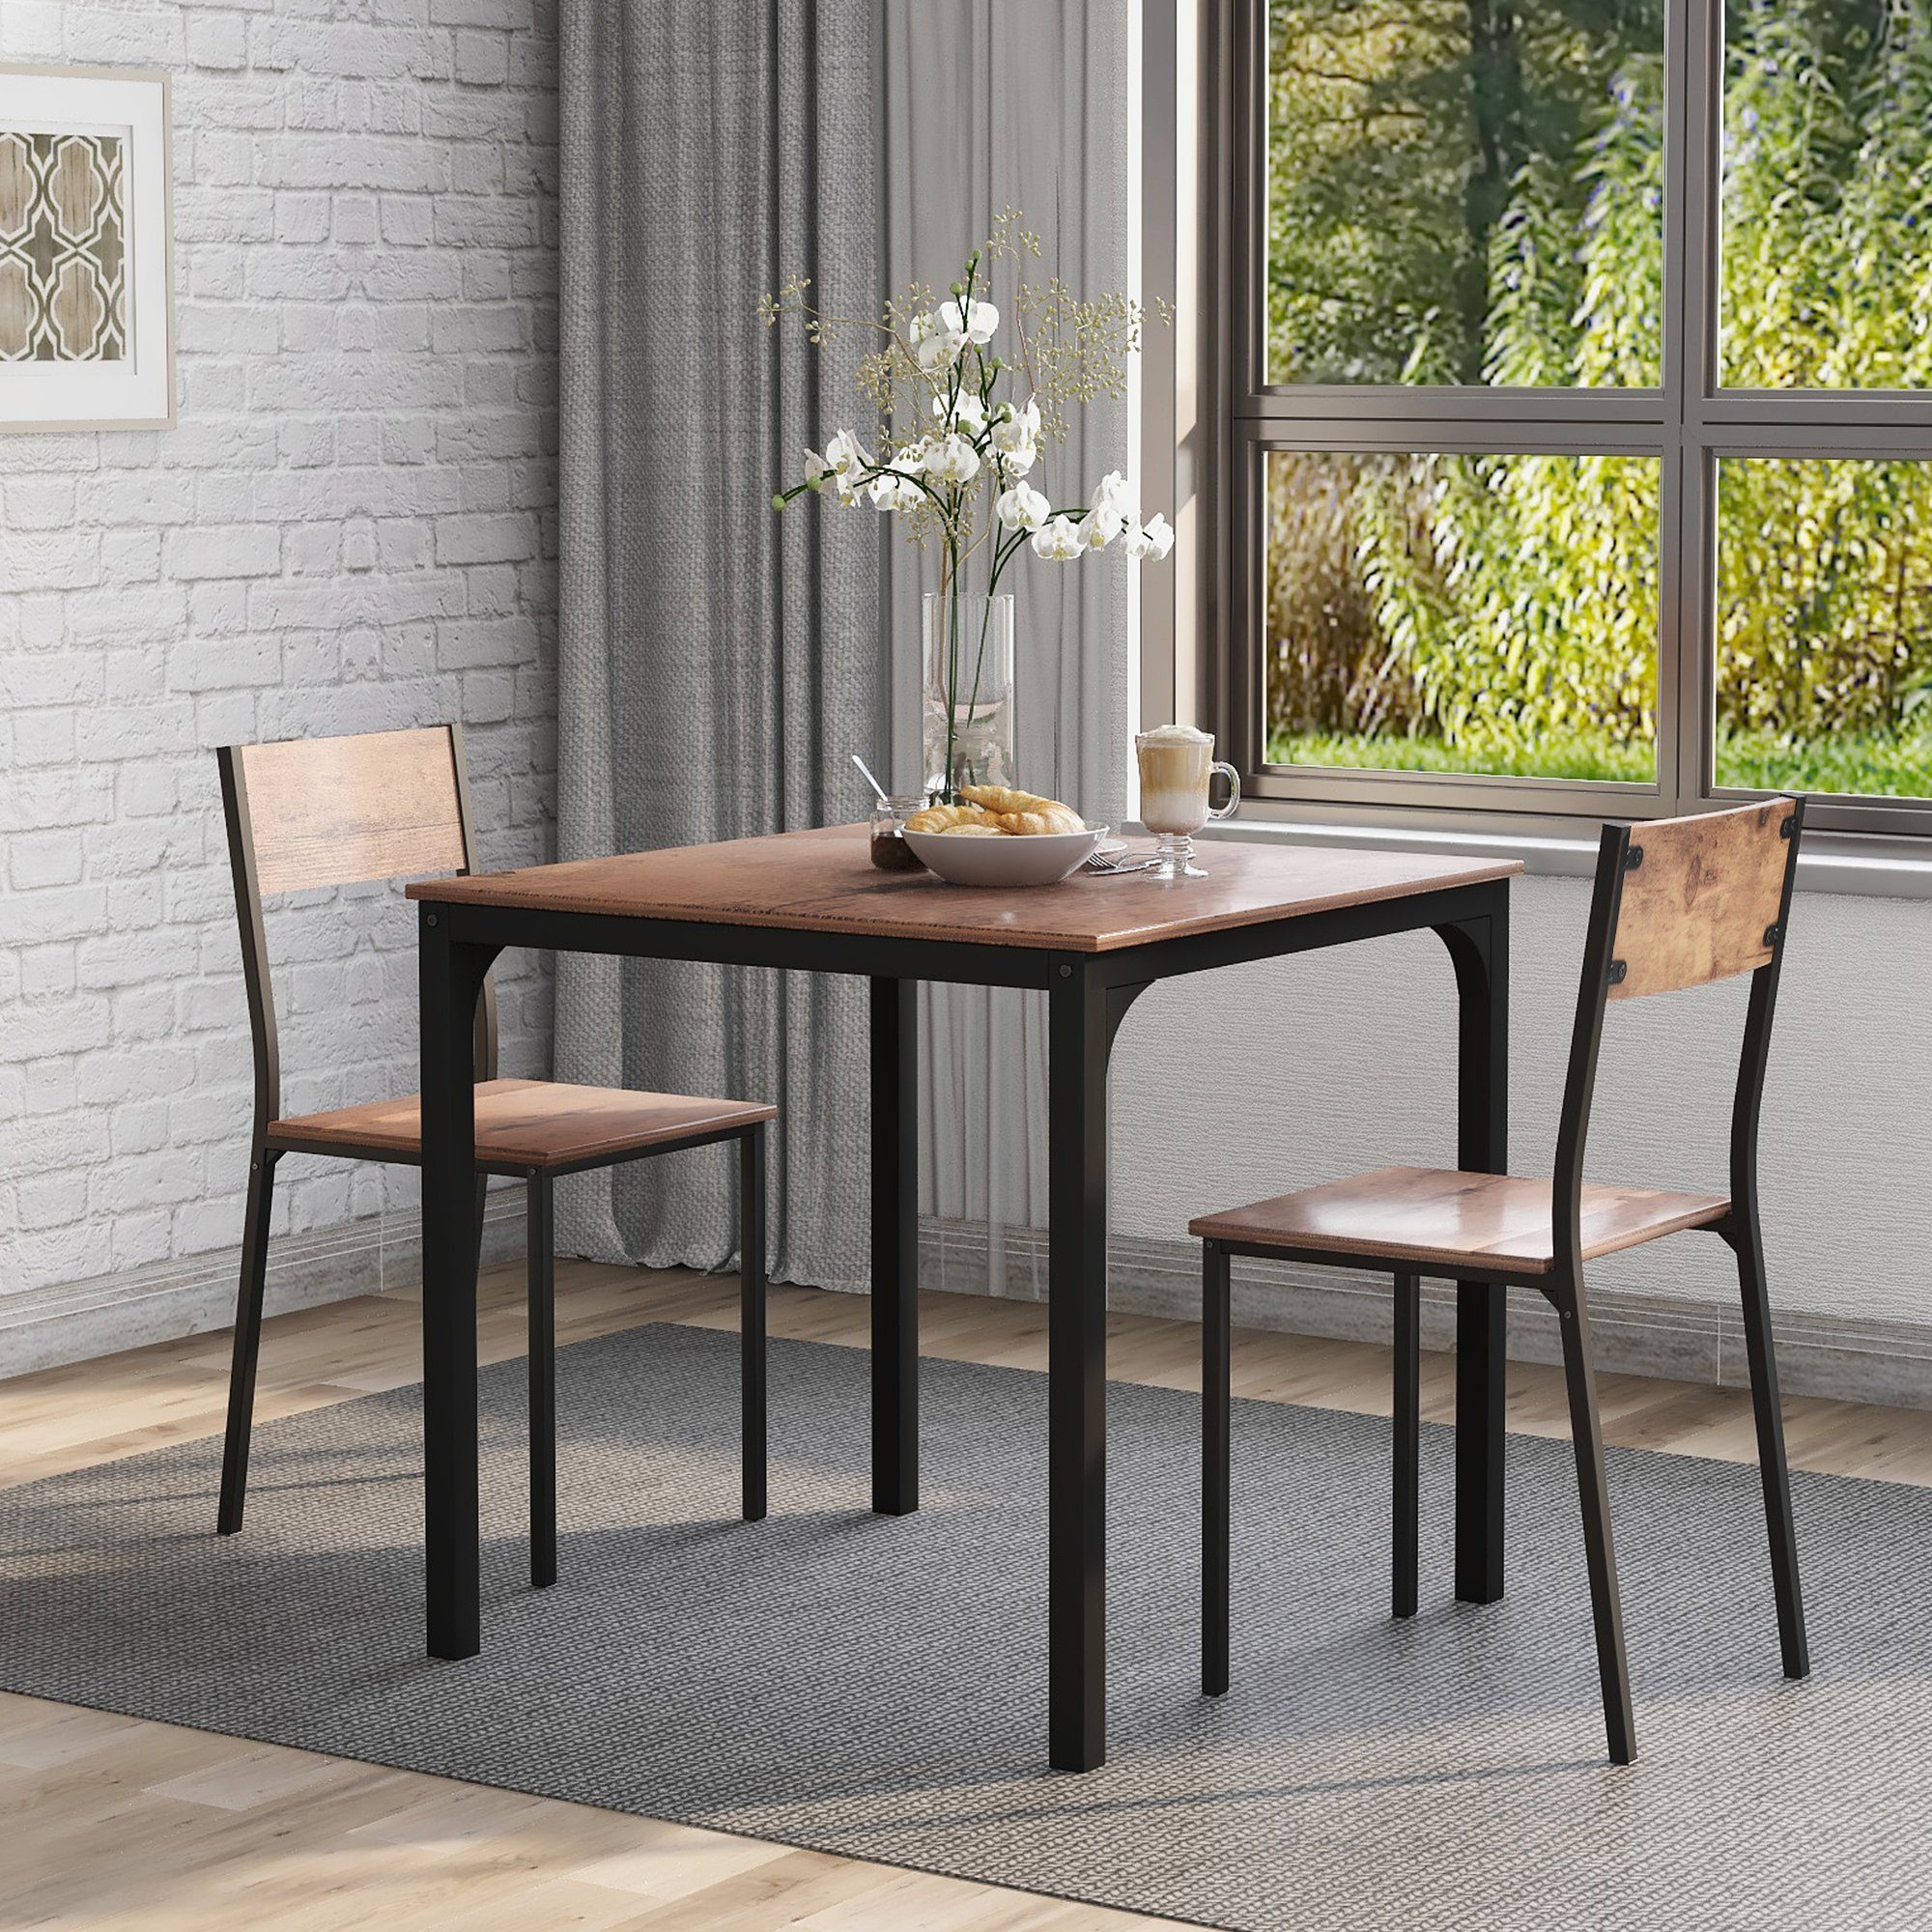 SOFTWEARY Esstisch mit 2 Stühlen, Esstisch-Set (3-teilig), 70x70x75cm, Küchentisch, Esszimmergruppe